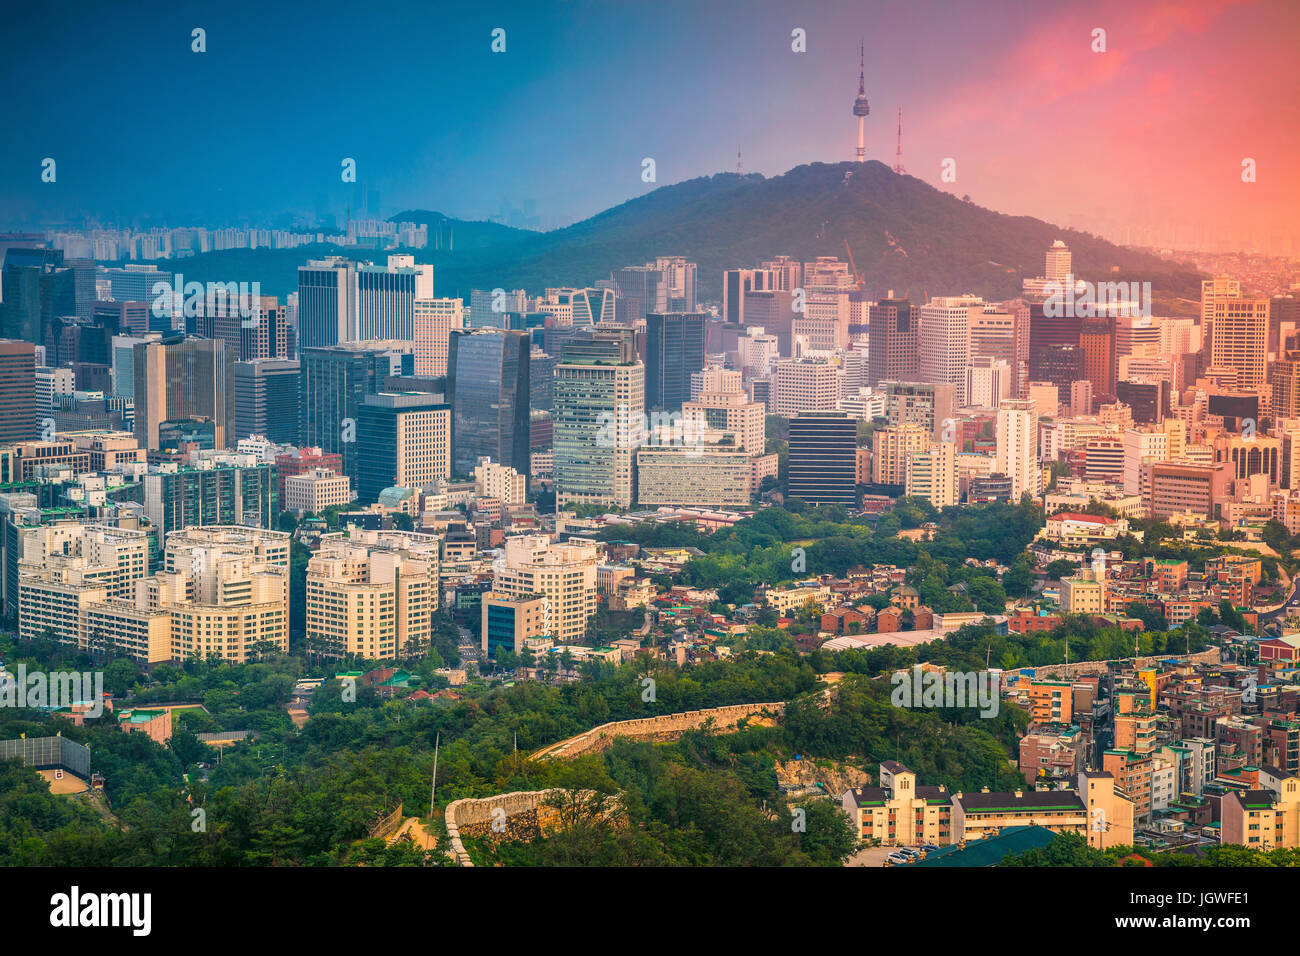 Seoul. Immagine del centro cittadino di Seoul durante il periodo estivo il tramonto. Foto Stock